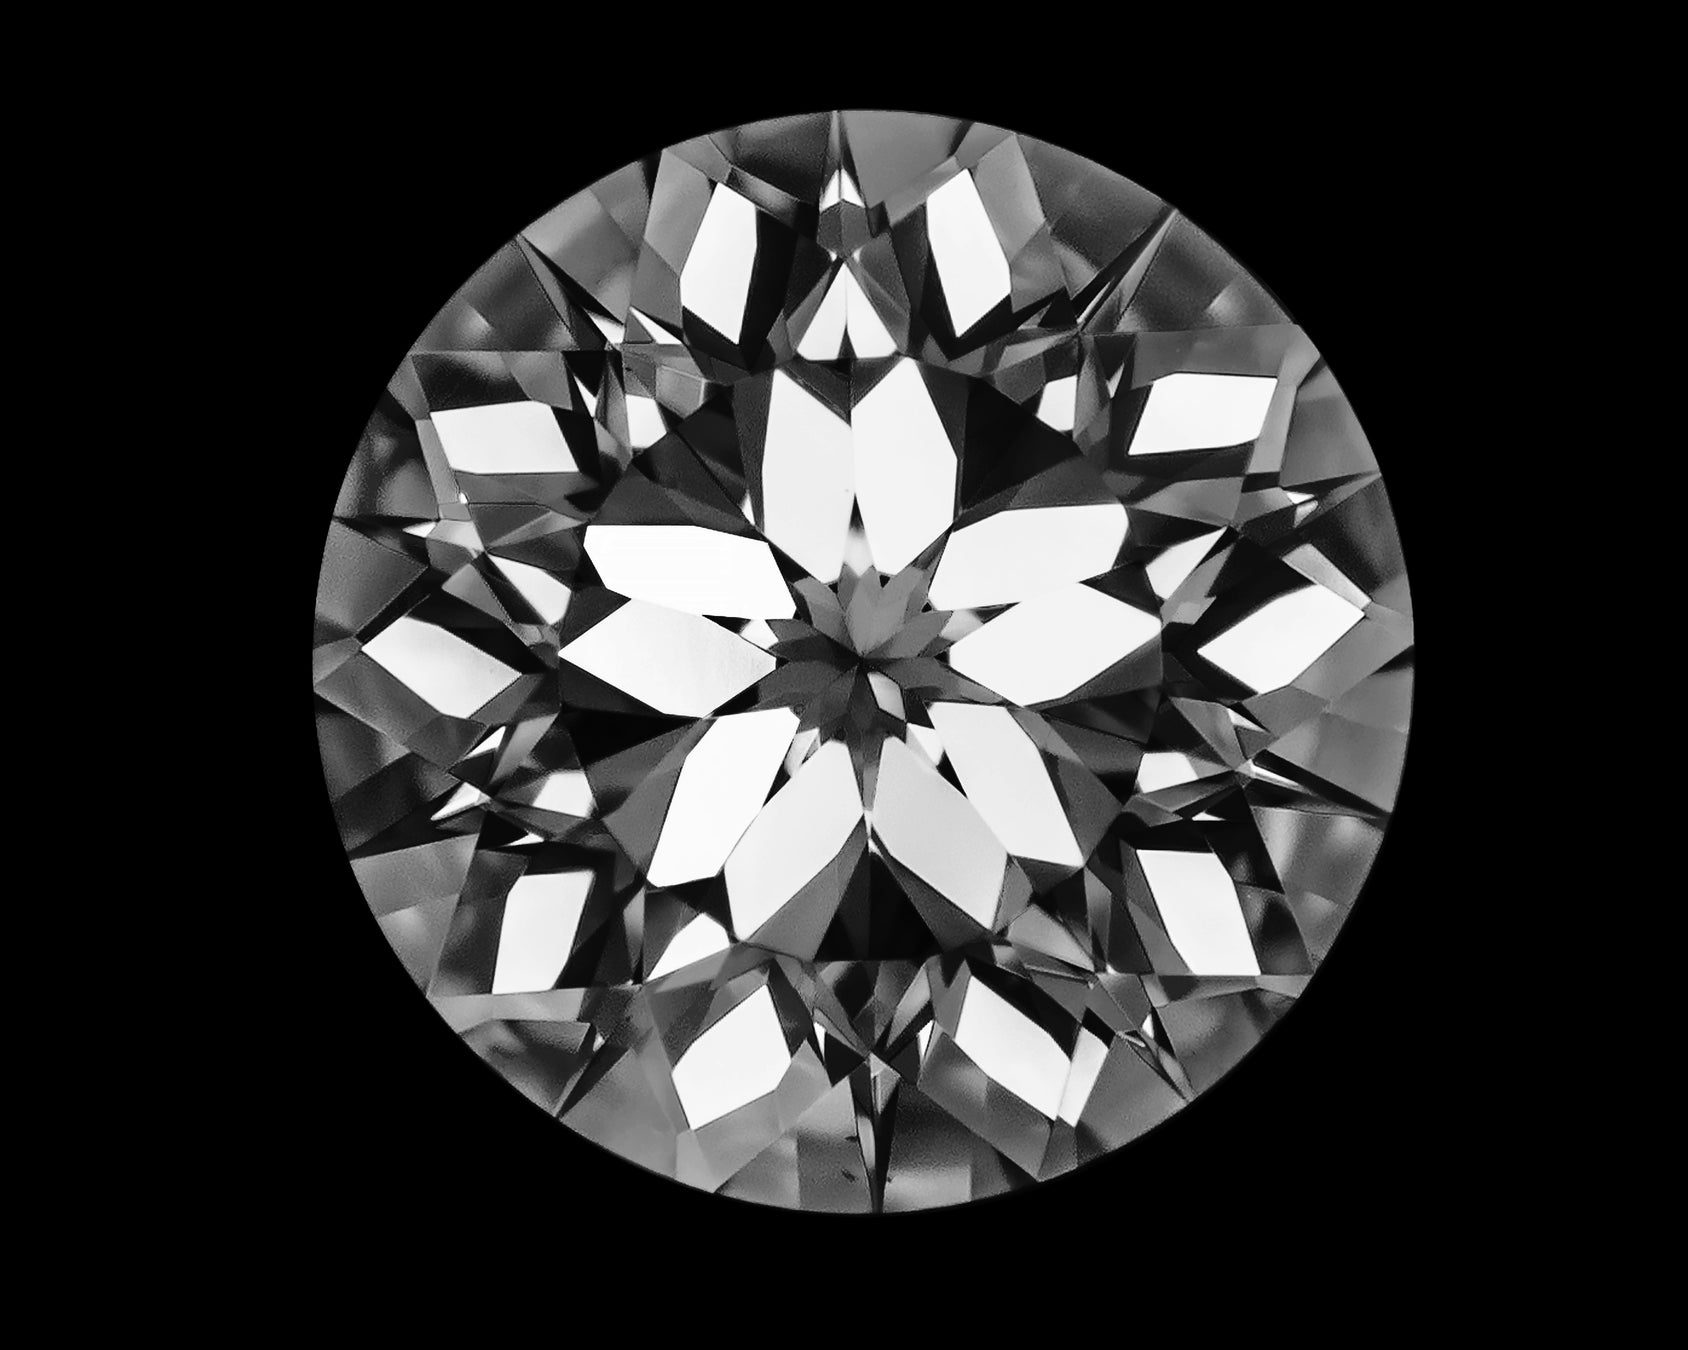 【ith/イズ】桜モチーフのカットが施された、煌めくダイヤモンドで特別な婚約指輪づくりを